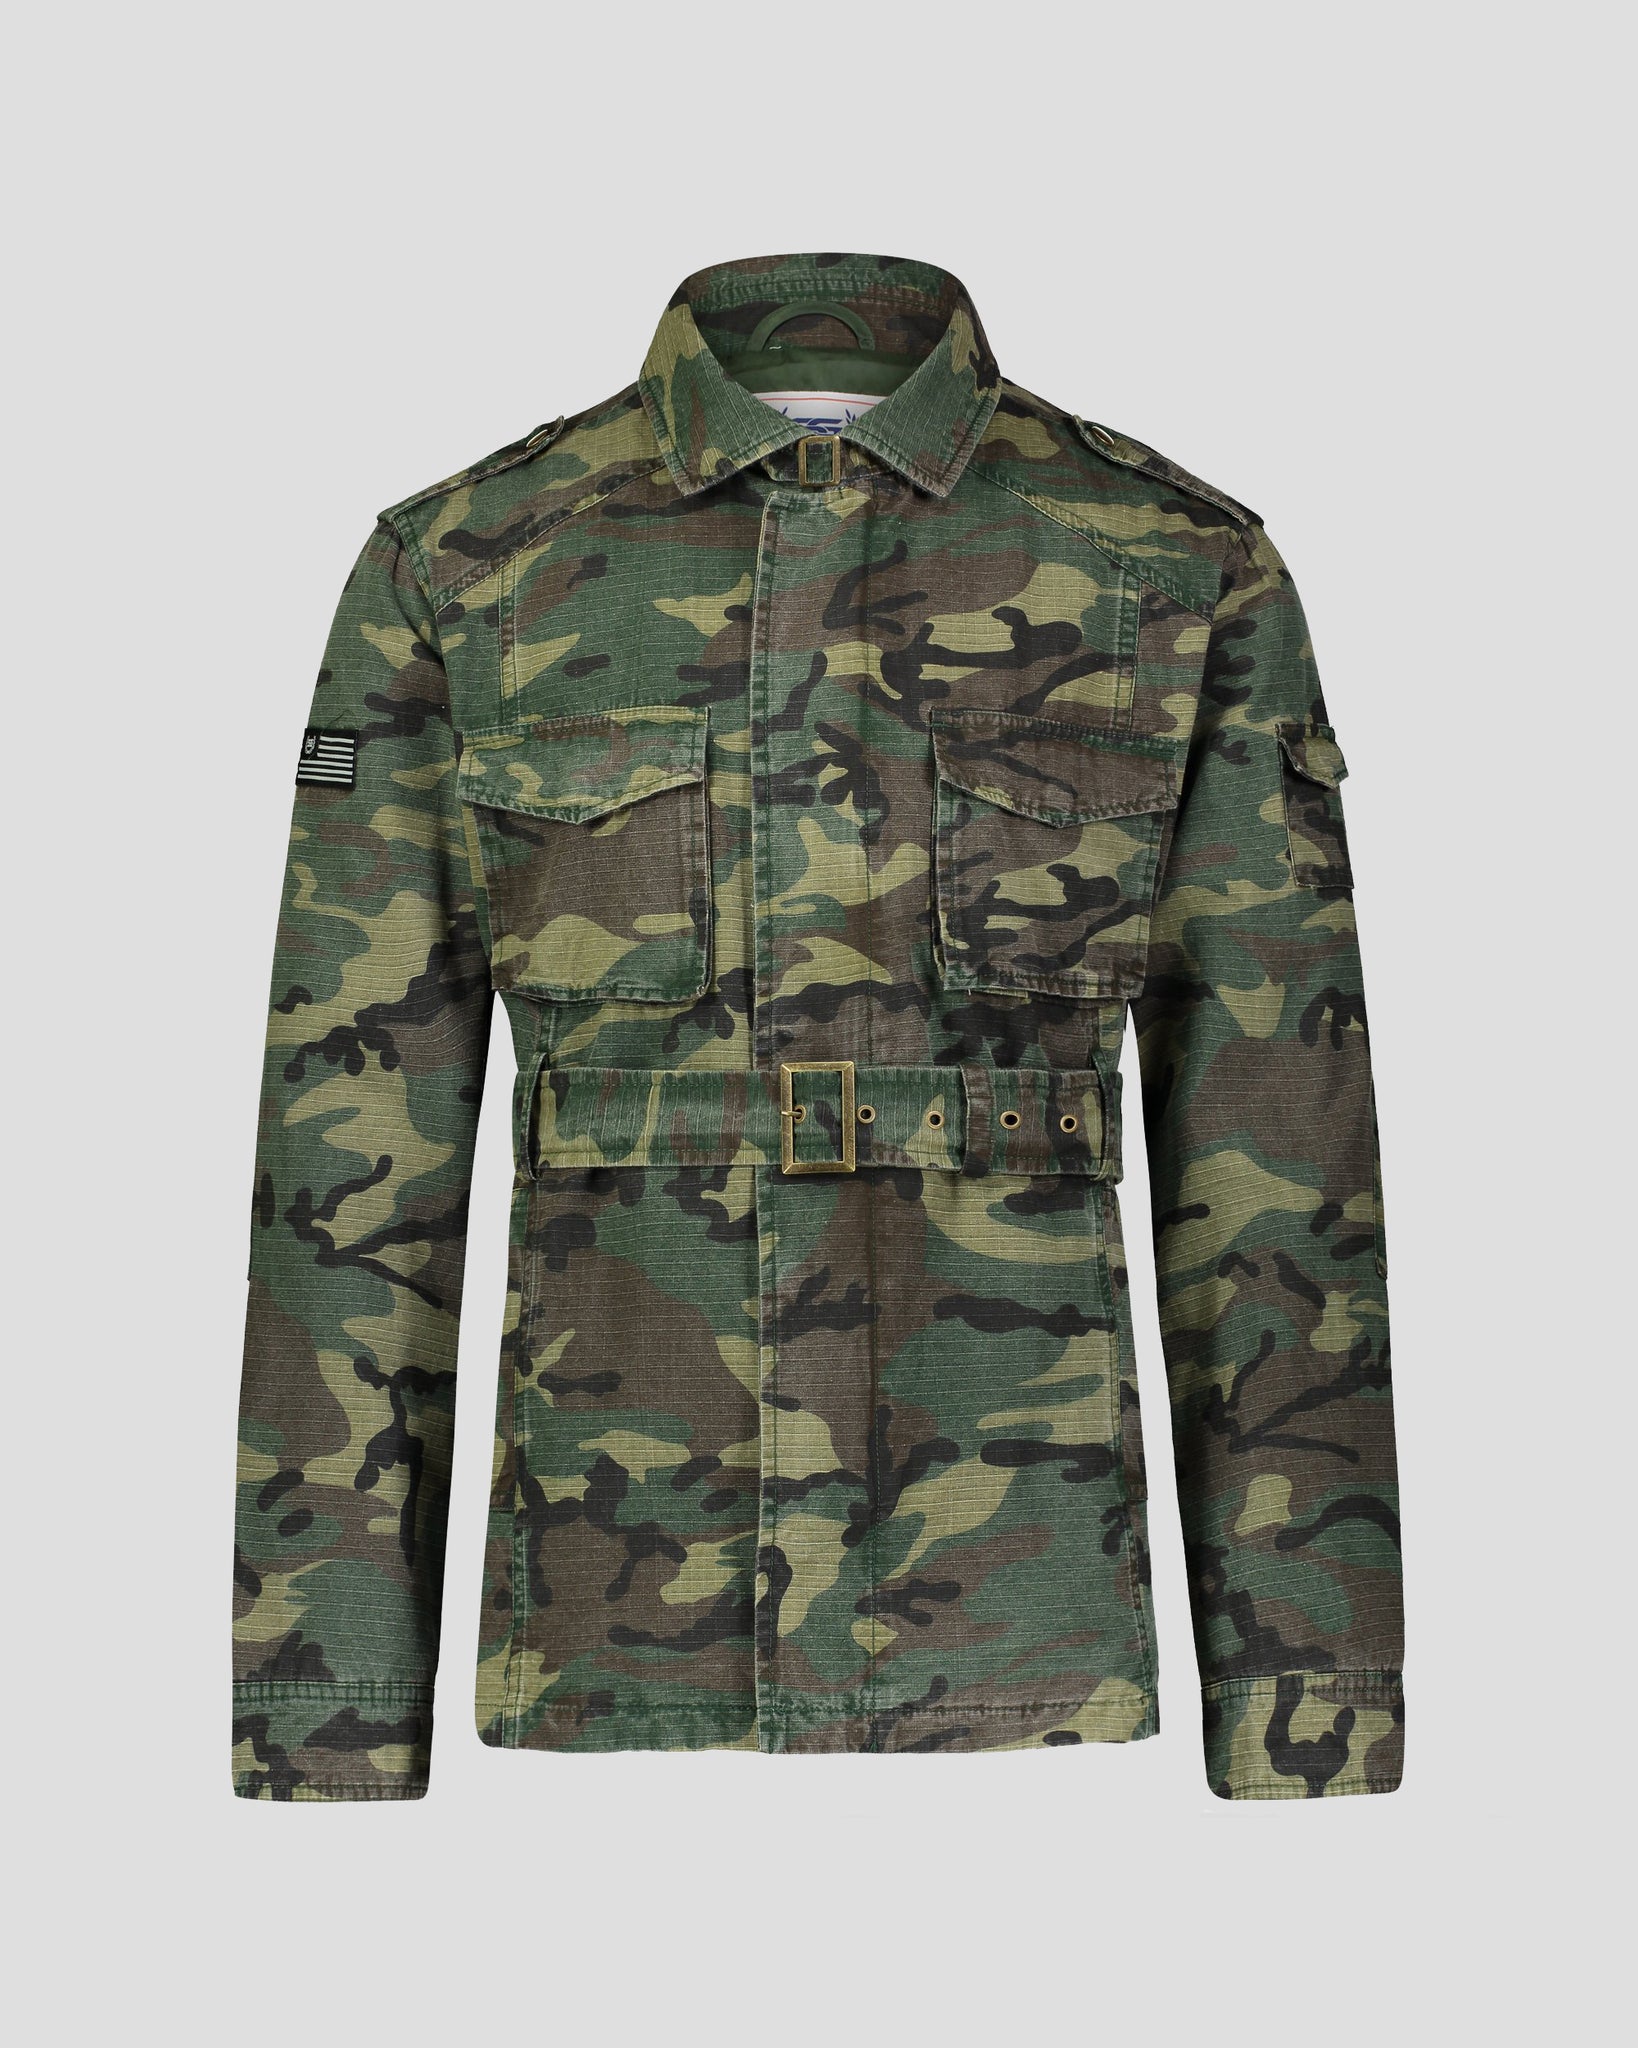 SG Men's Field Jacket V2 – Camouflage